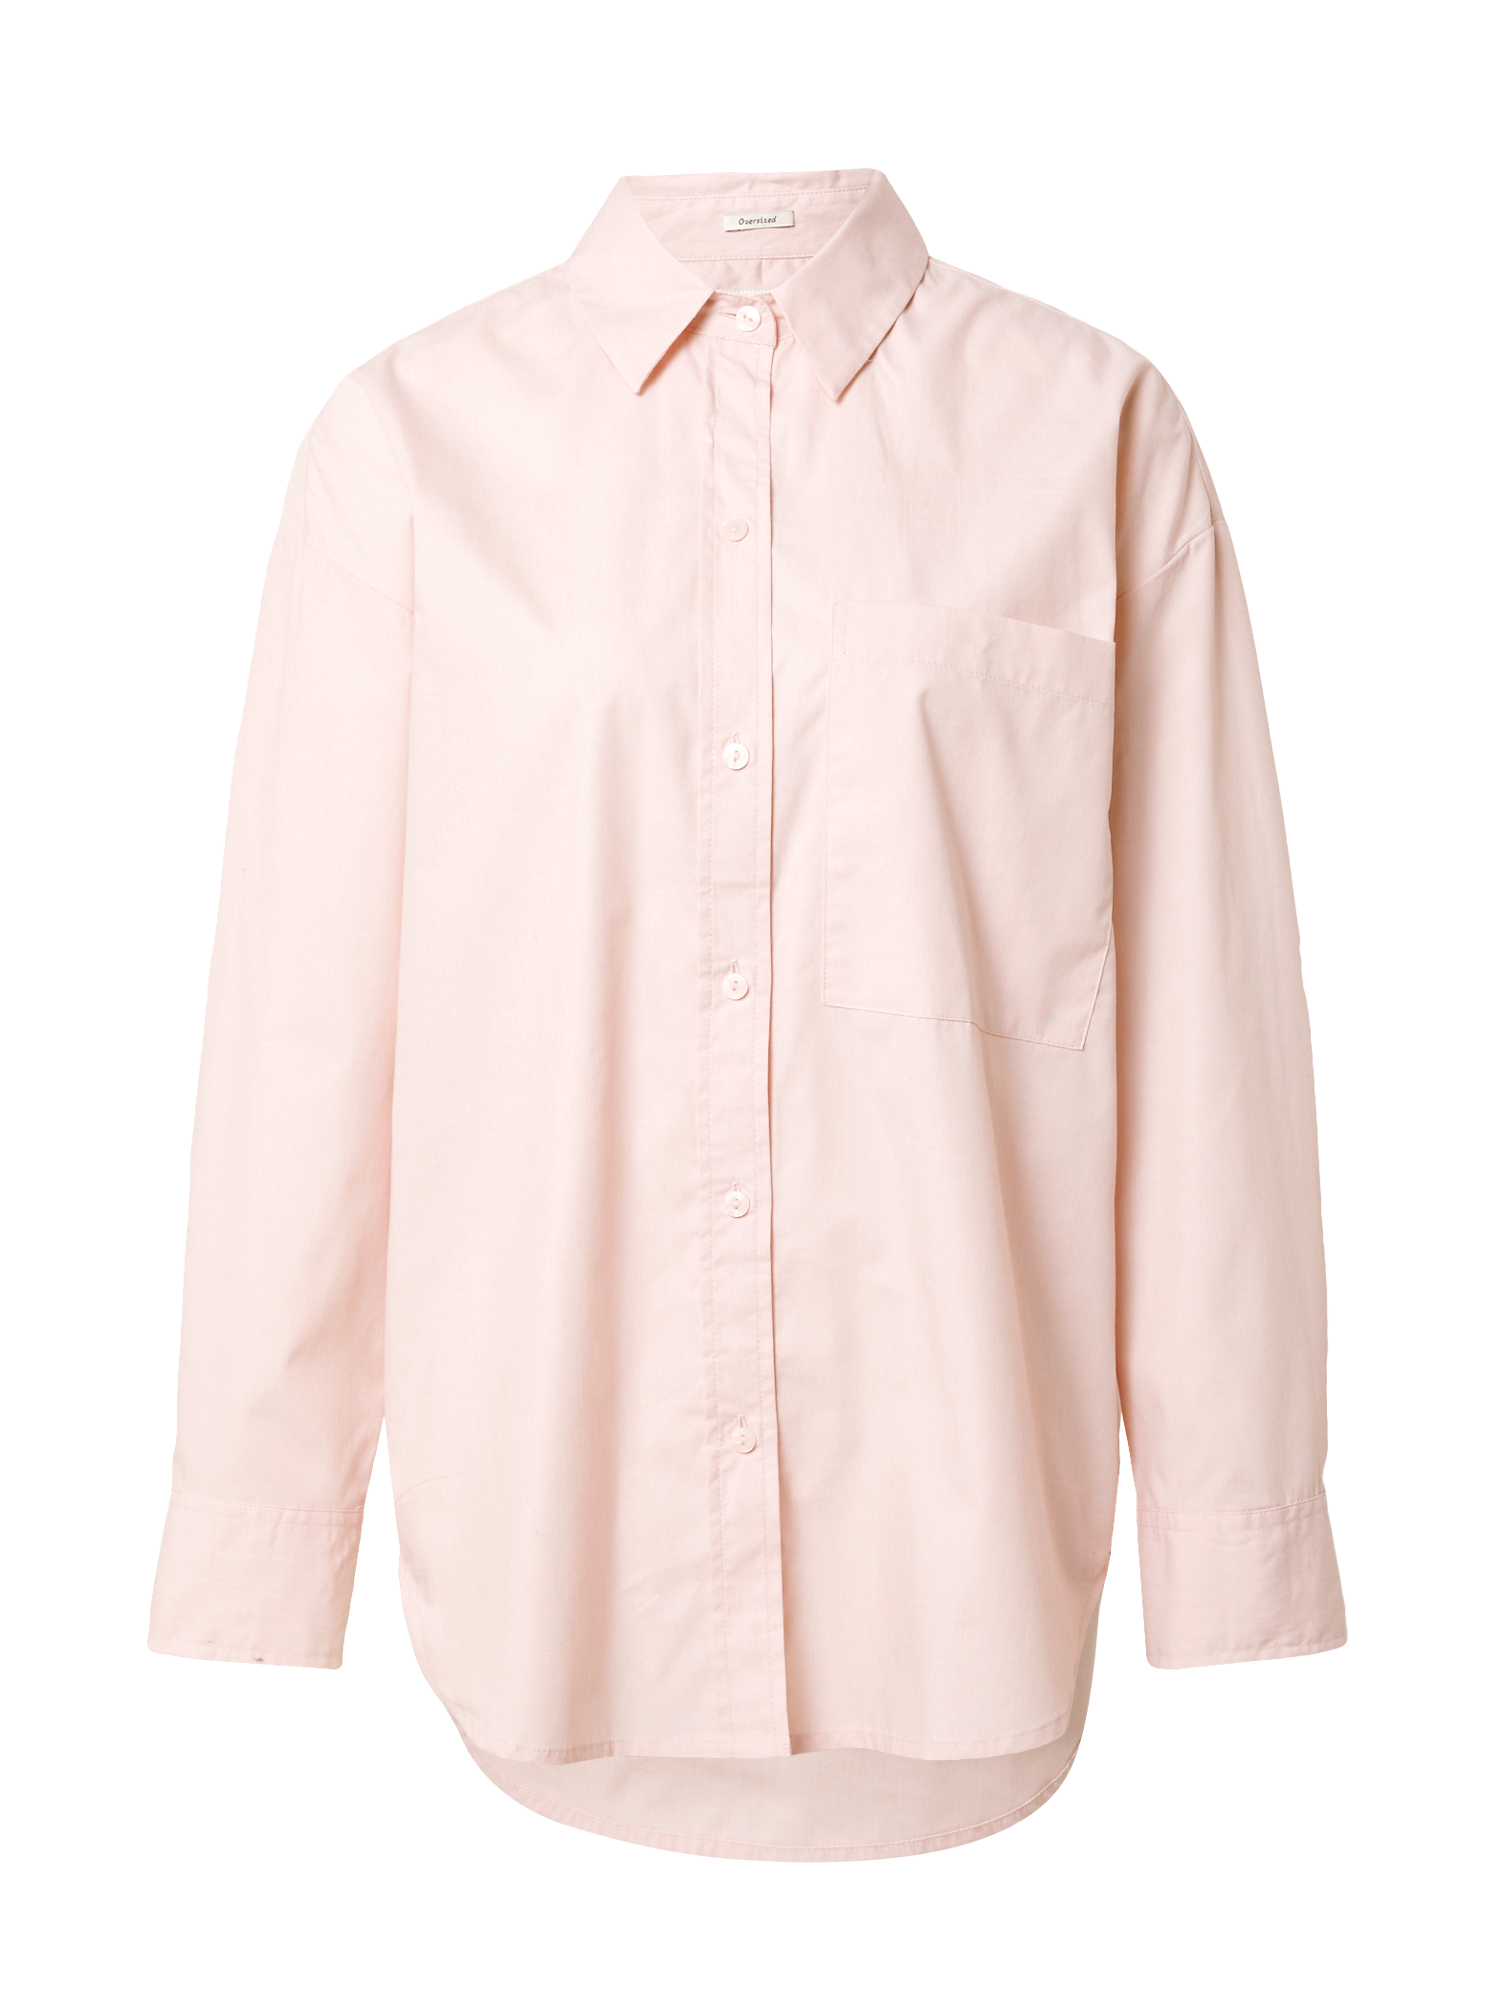 sF8Hy Odzież Abercrombie & Fitch Bluzka w kolorze Pastelowy Różm 